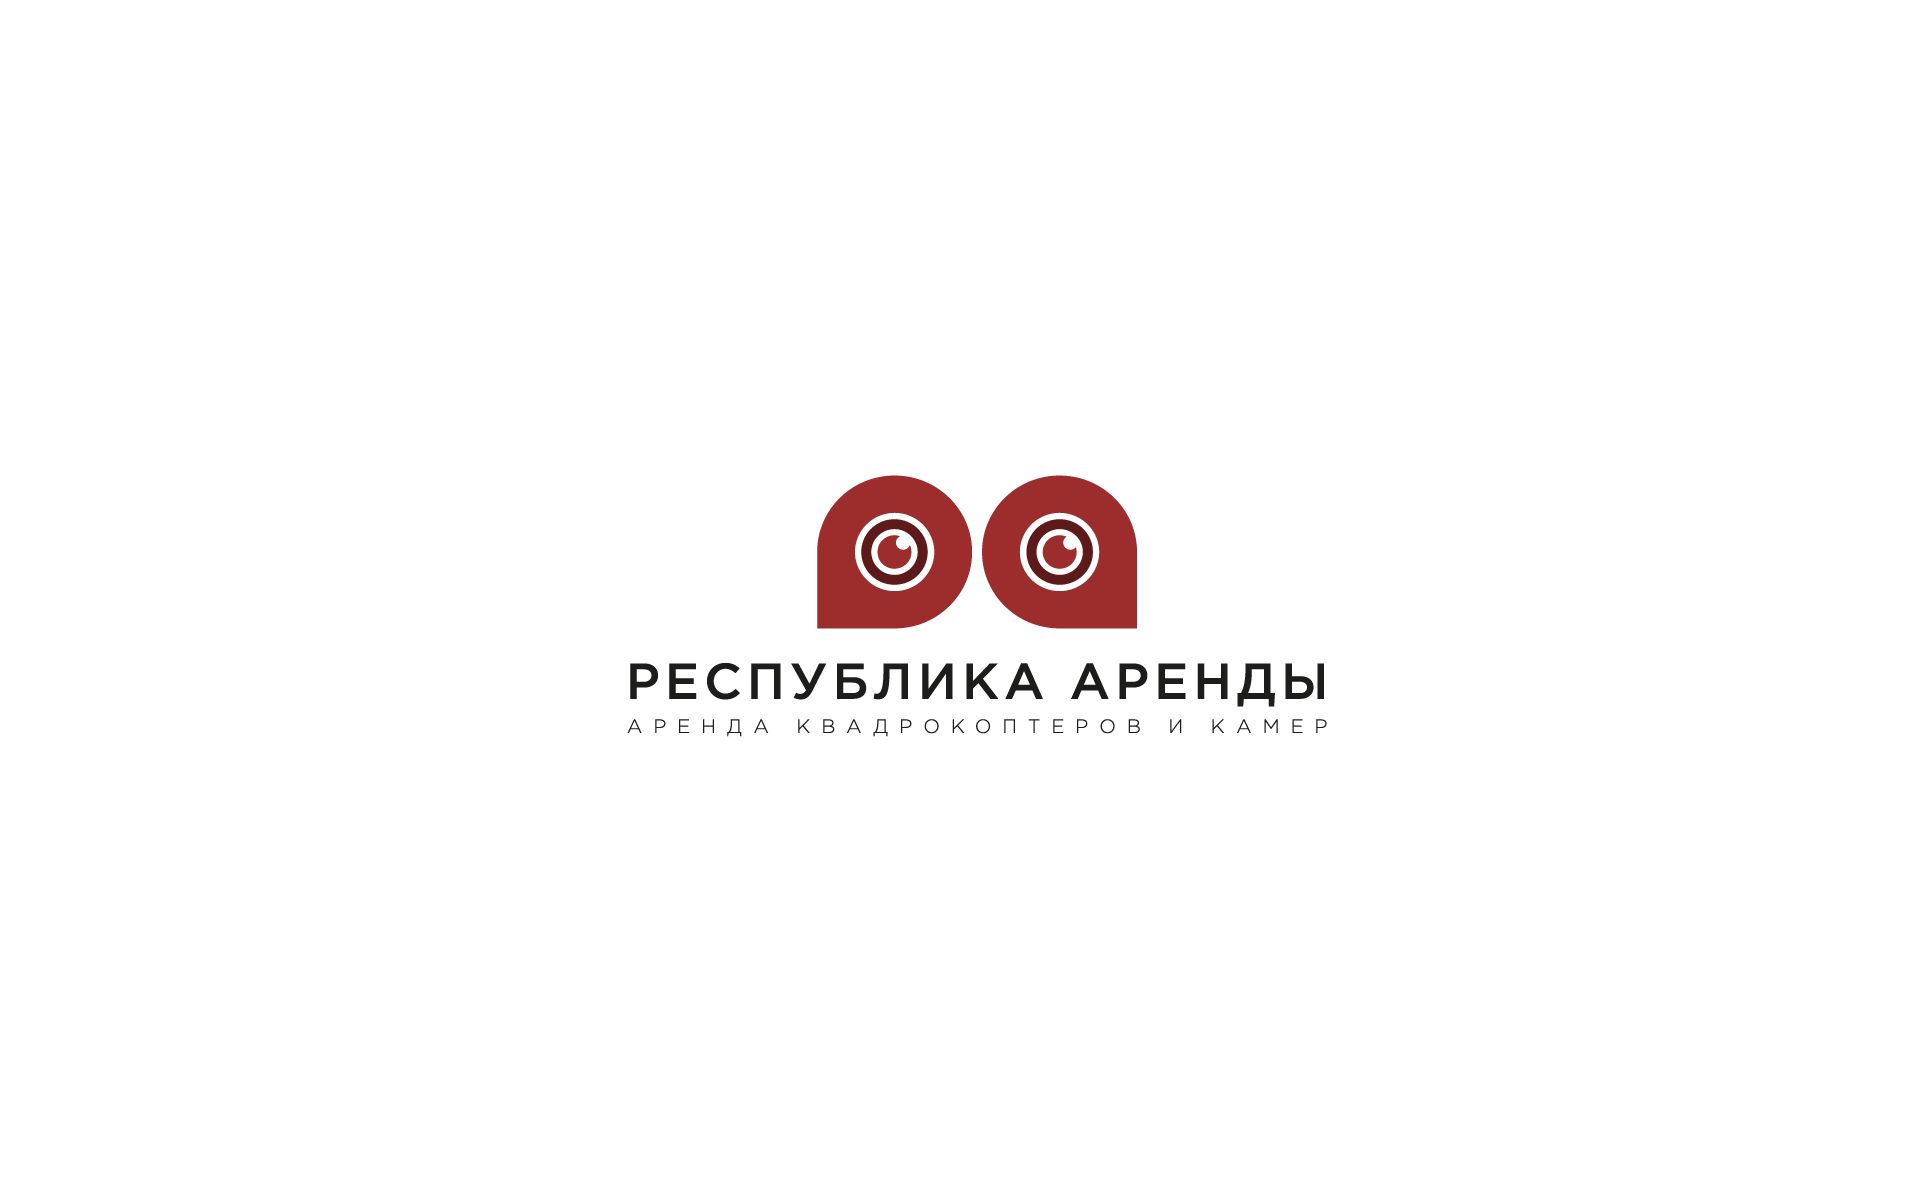 Логотип для компании по аренде квадракоптеров - дизайнер U4po4mak